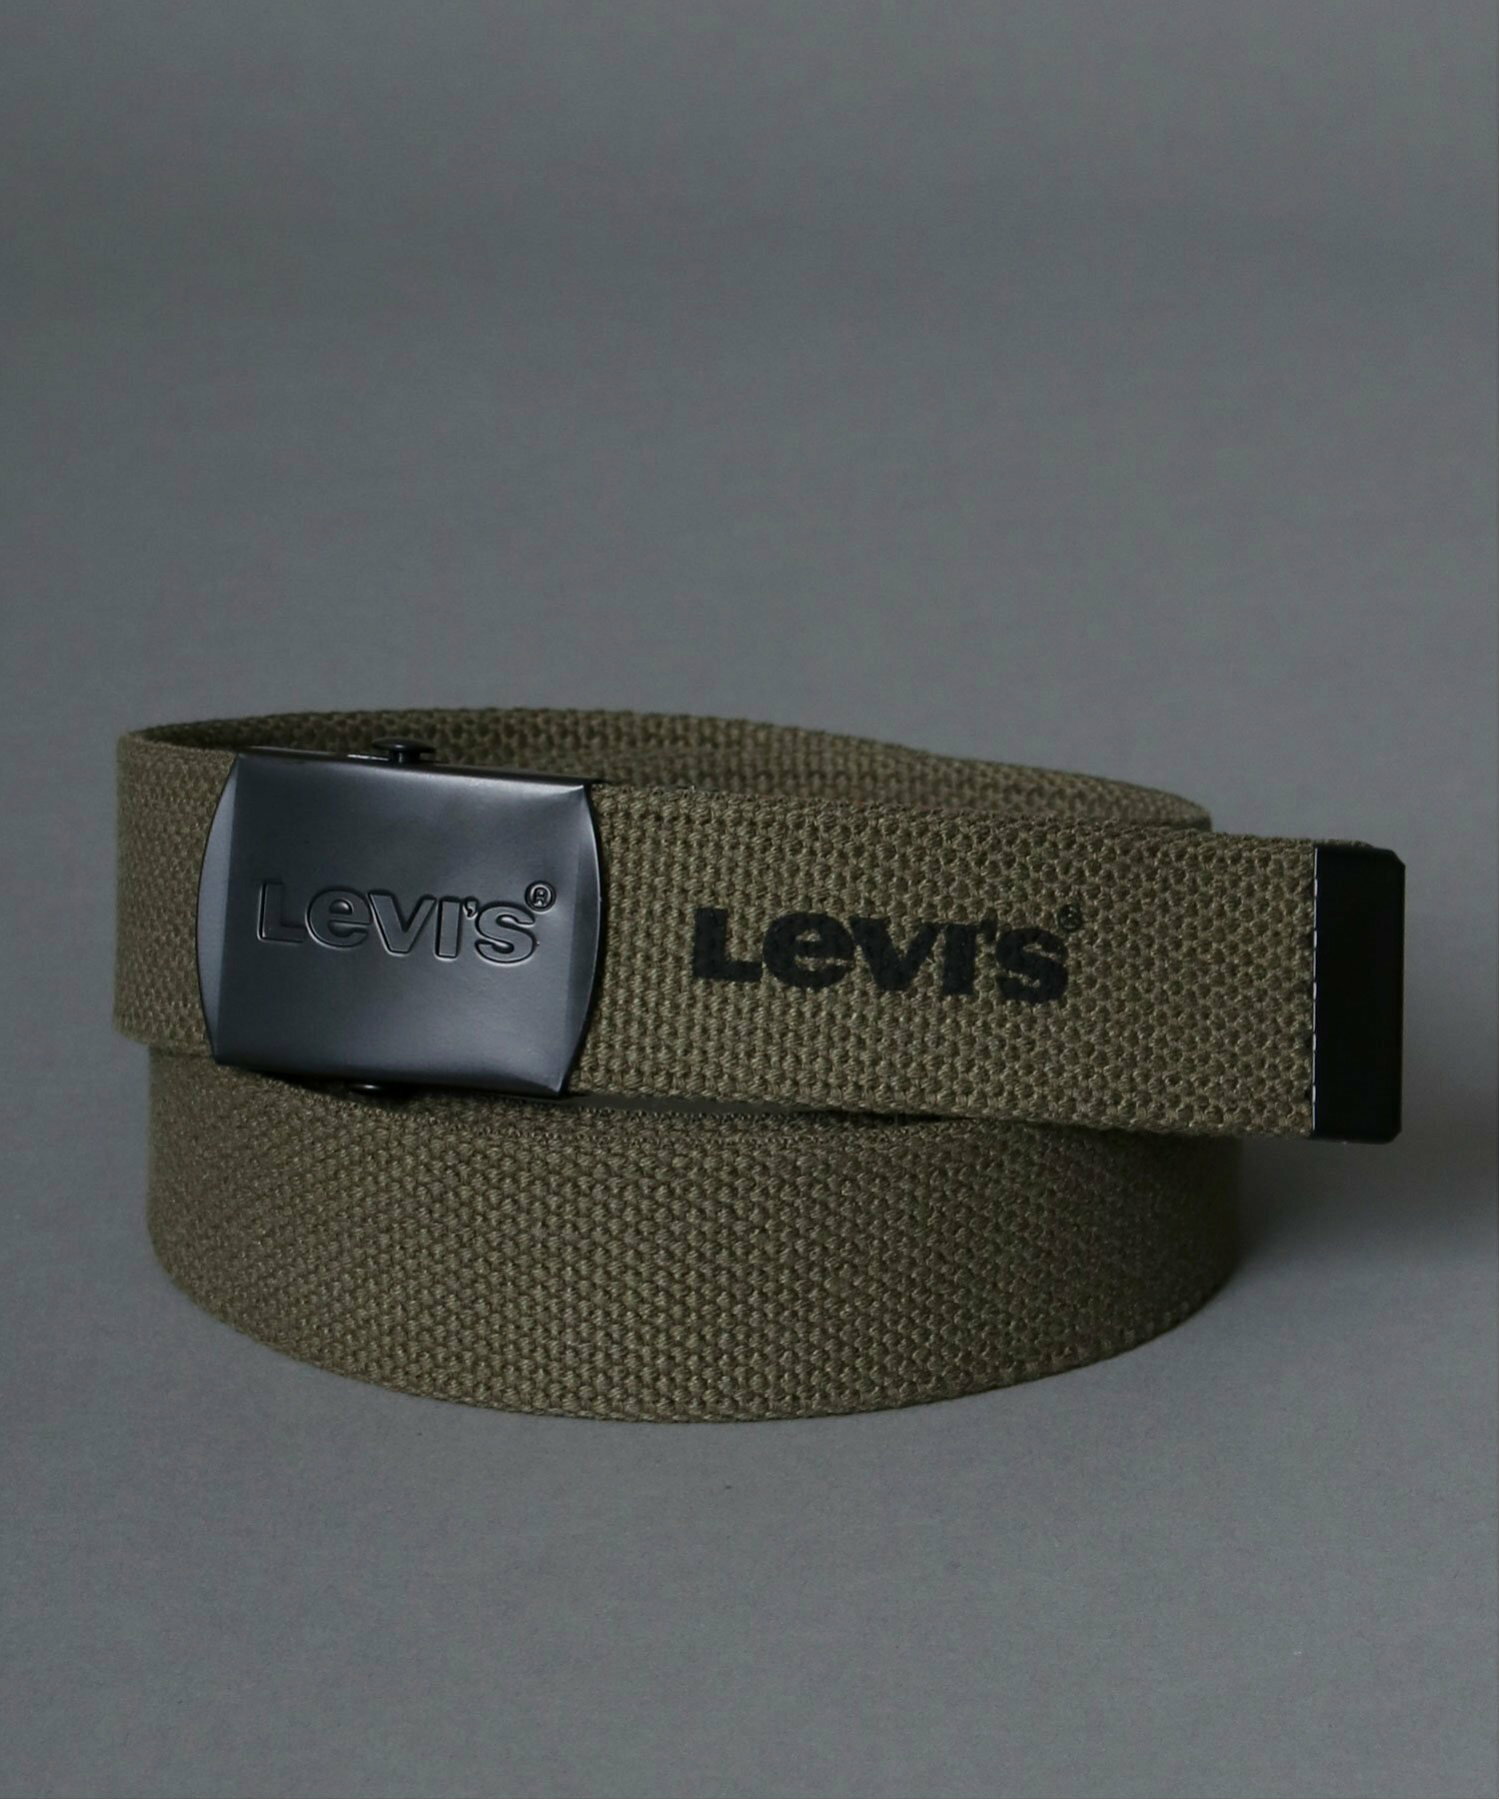 Levi's ベルト メンズ GIベルト ブランド カジュアル